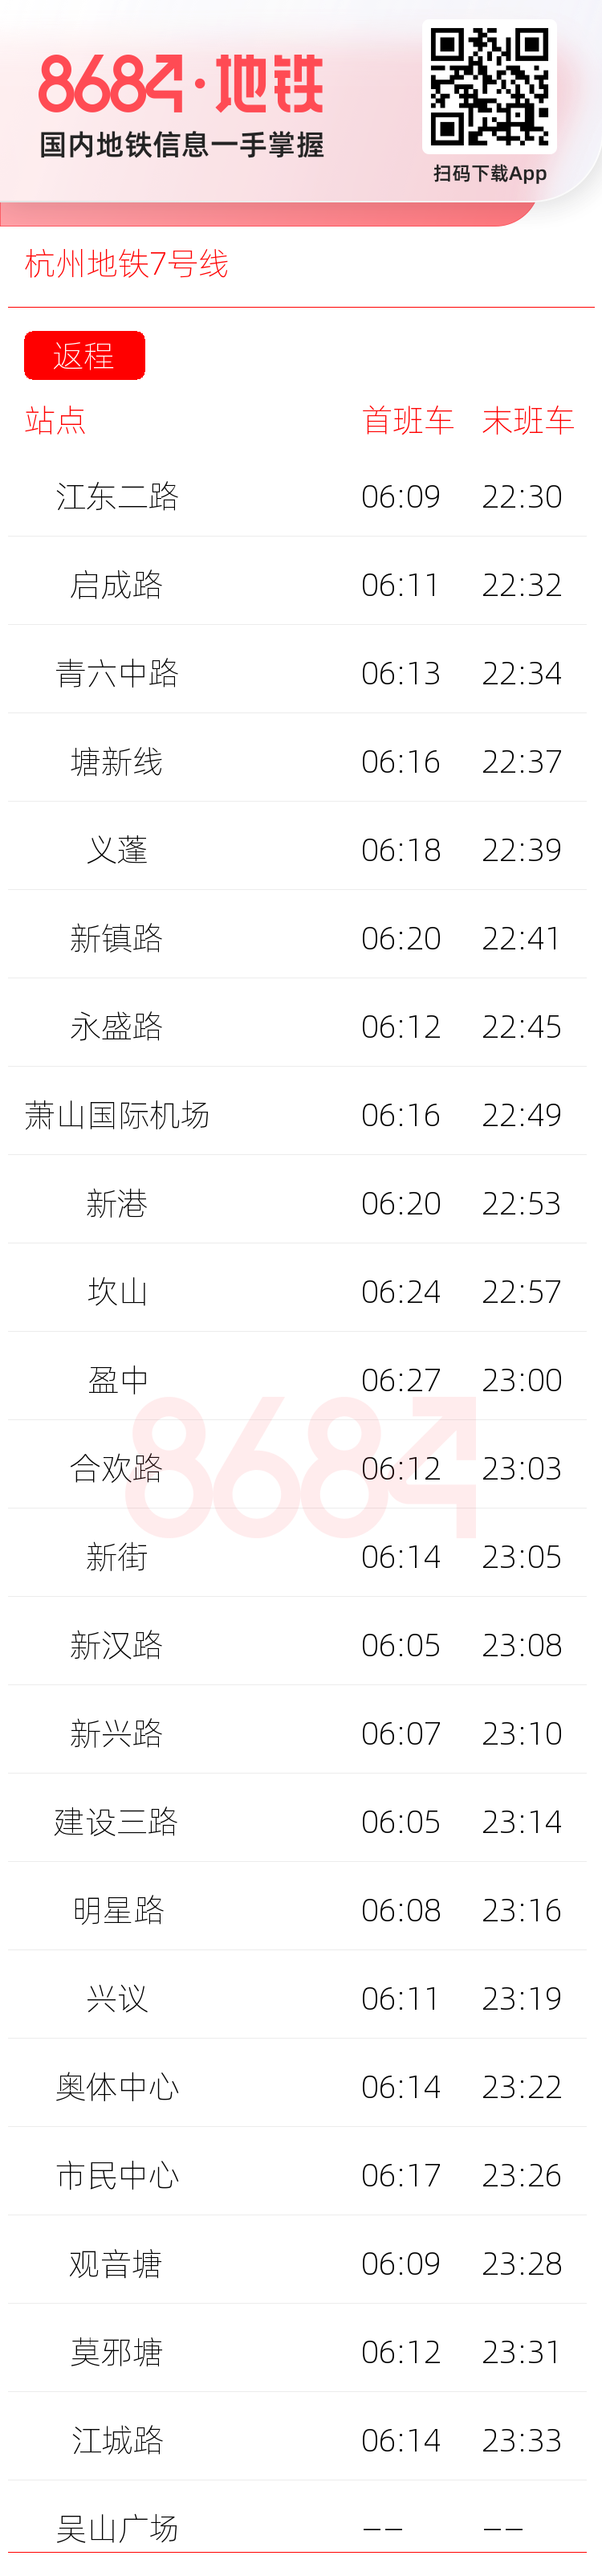 杭州地铁7号线运营时间表